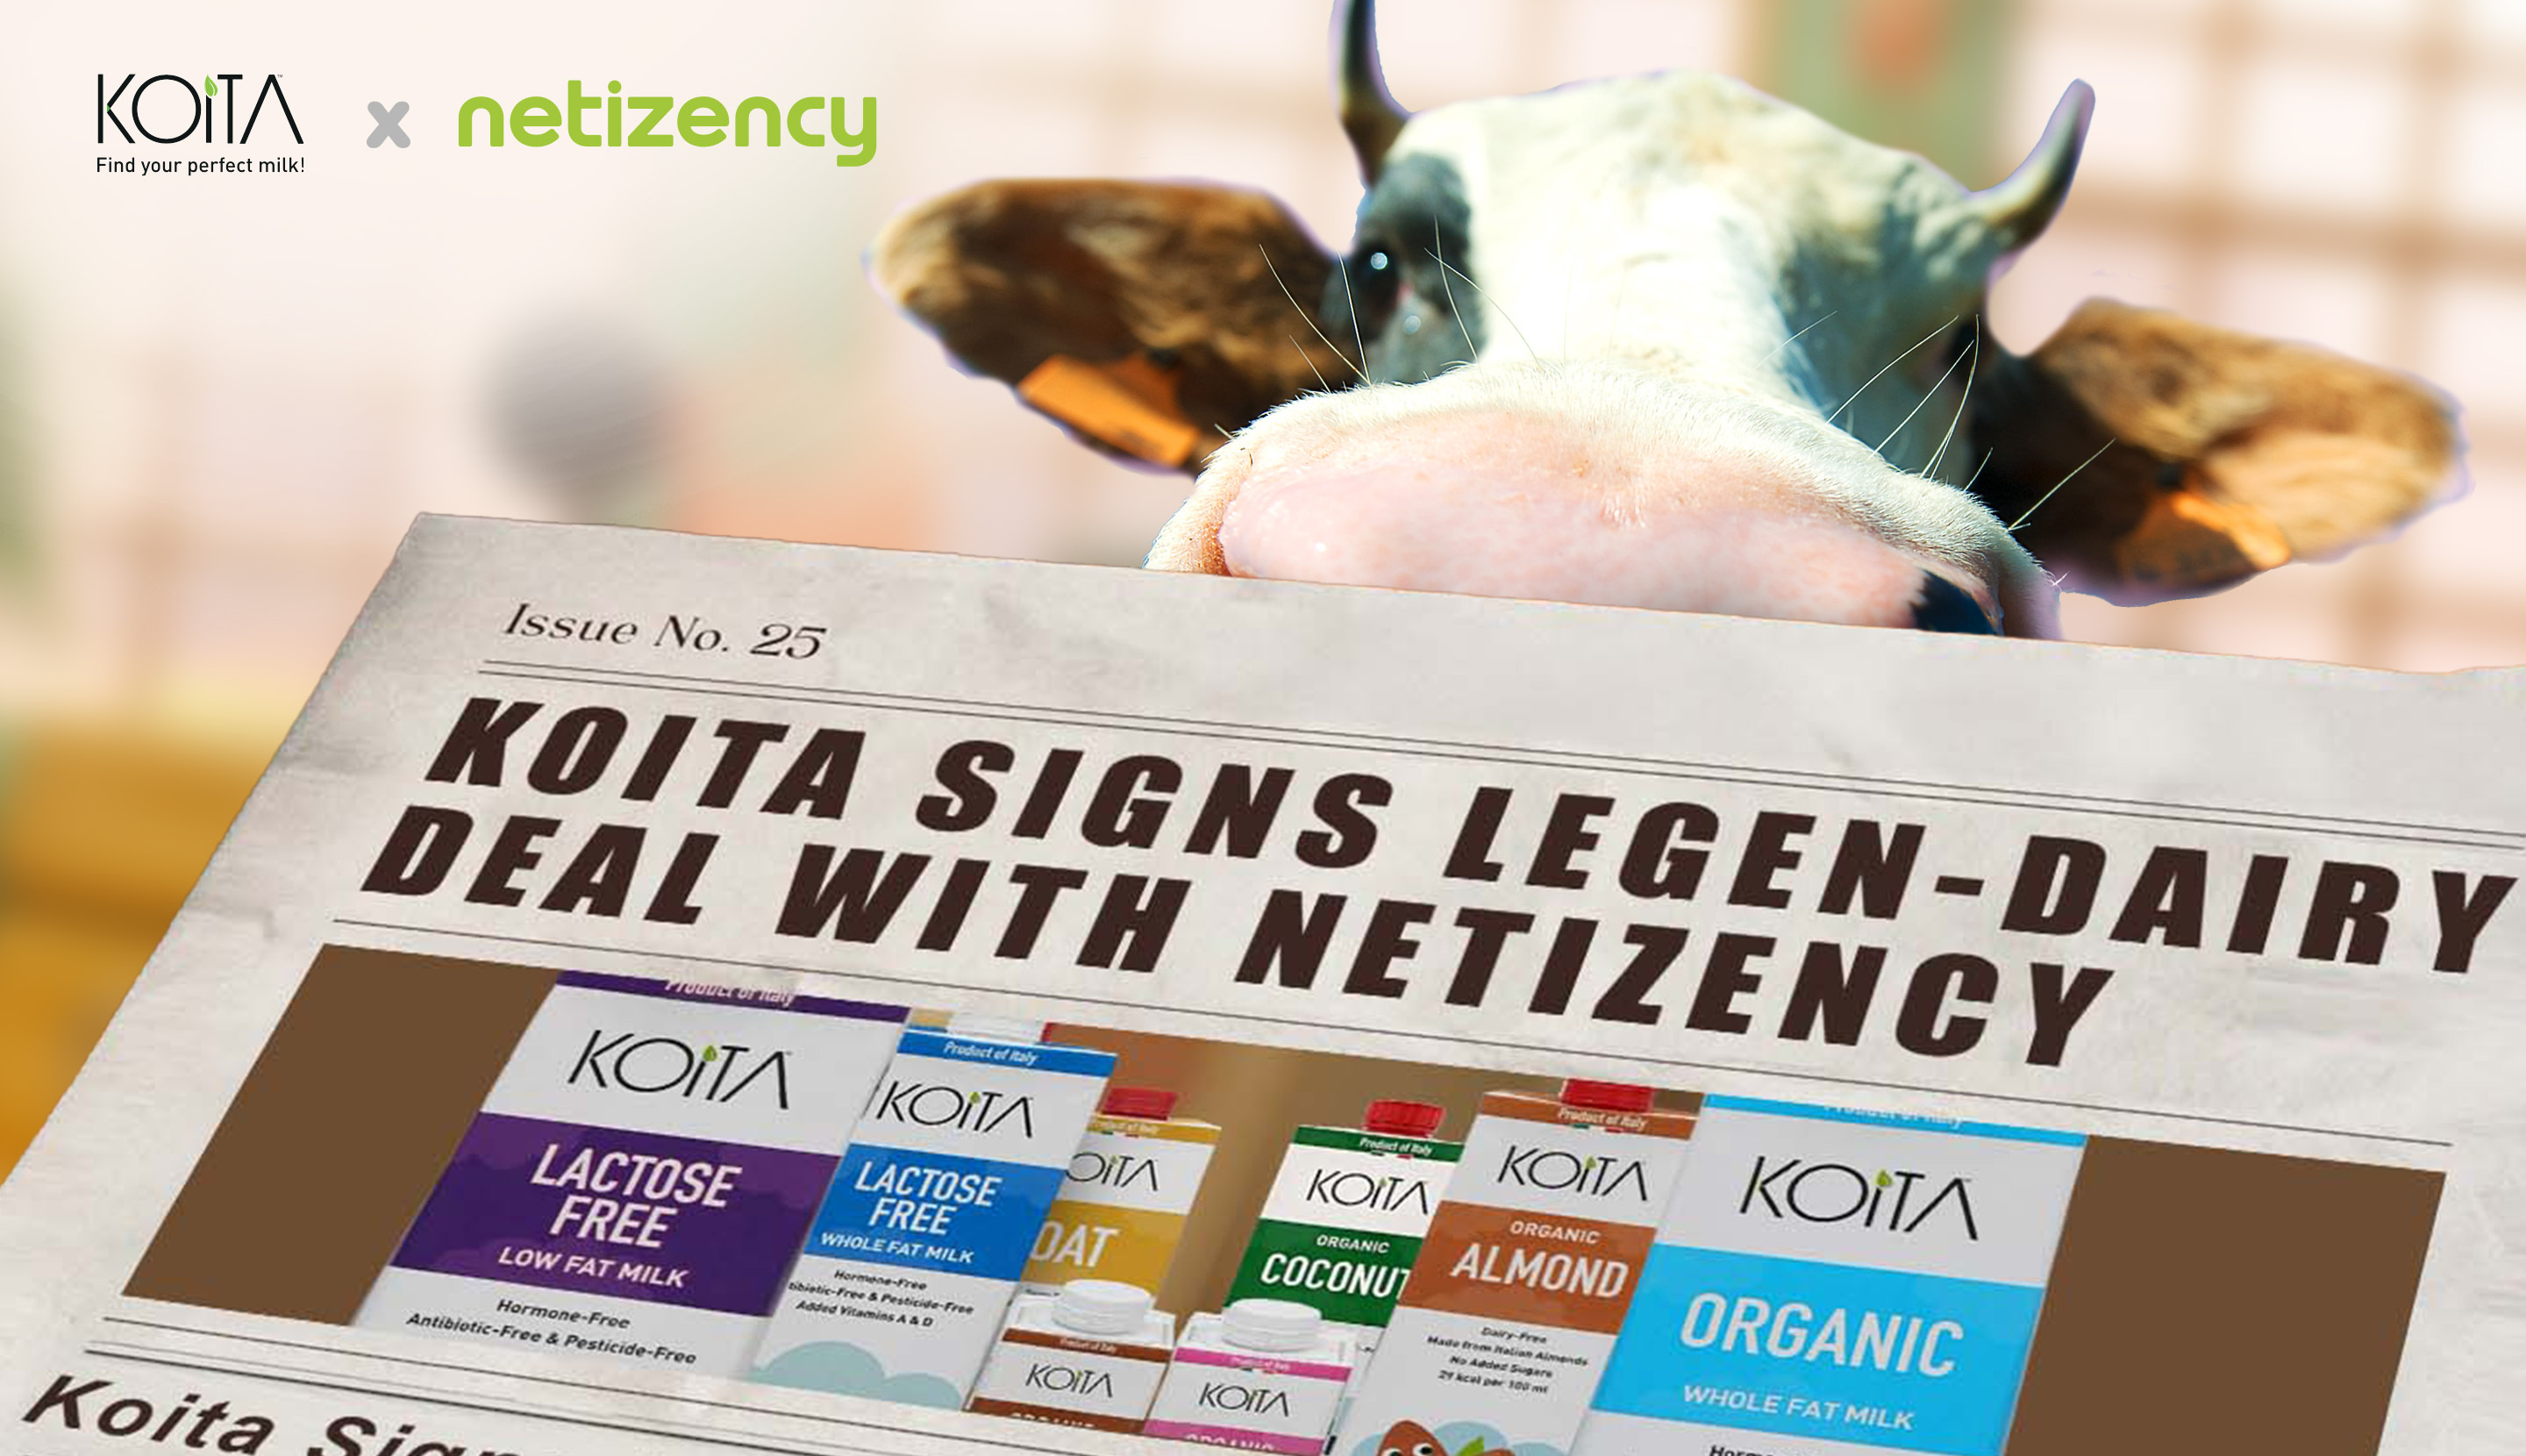 Koita Signs Legen-dairy Deal With Netizency